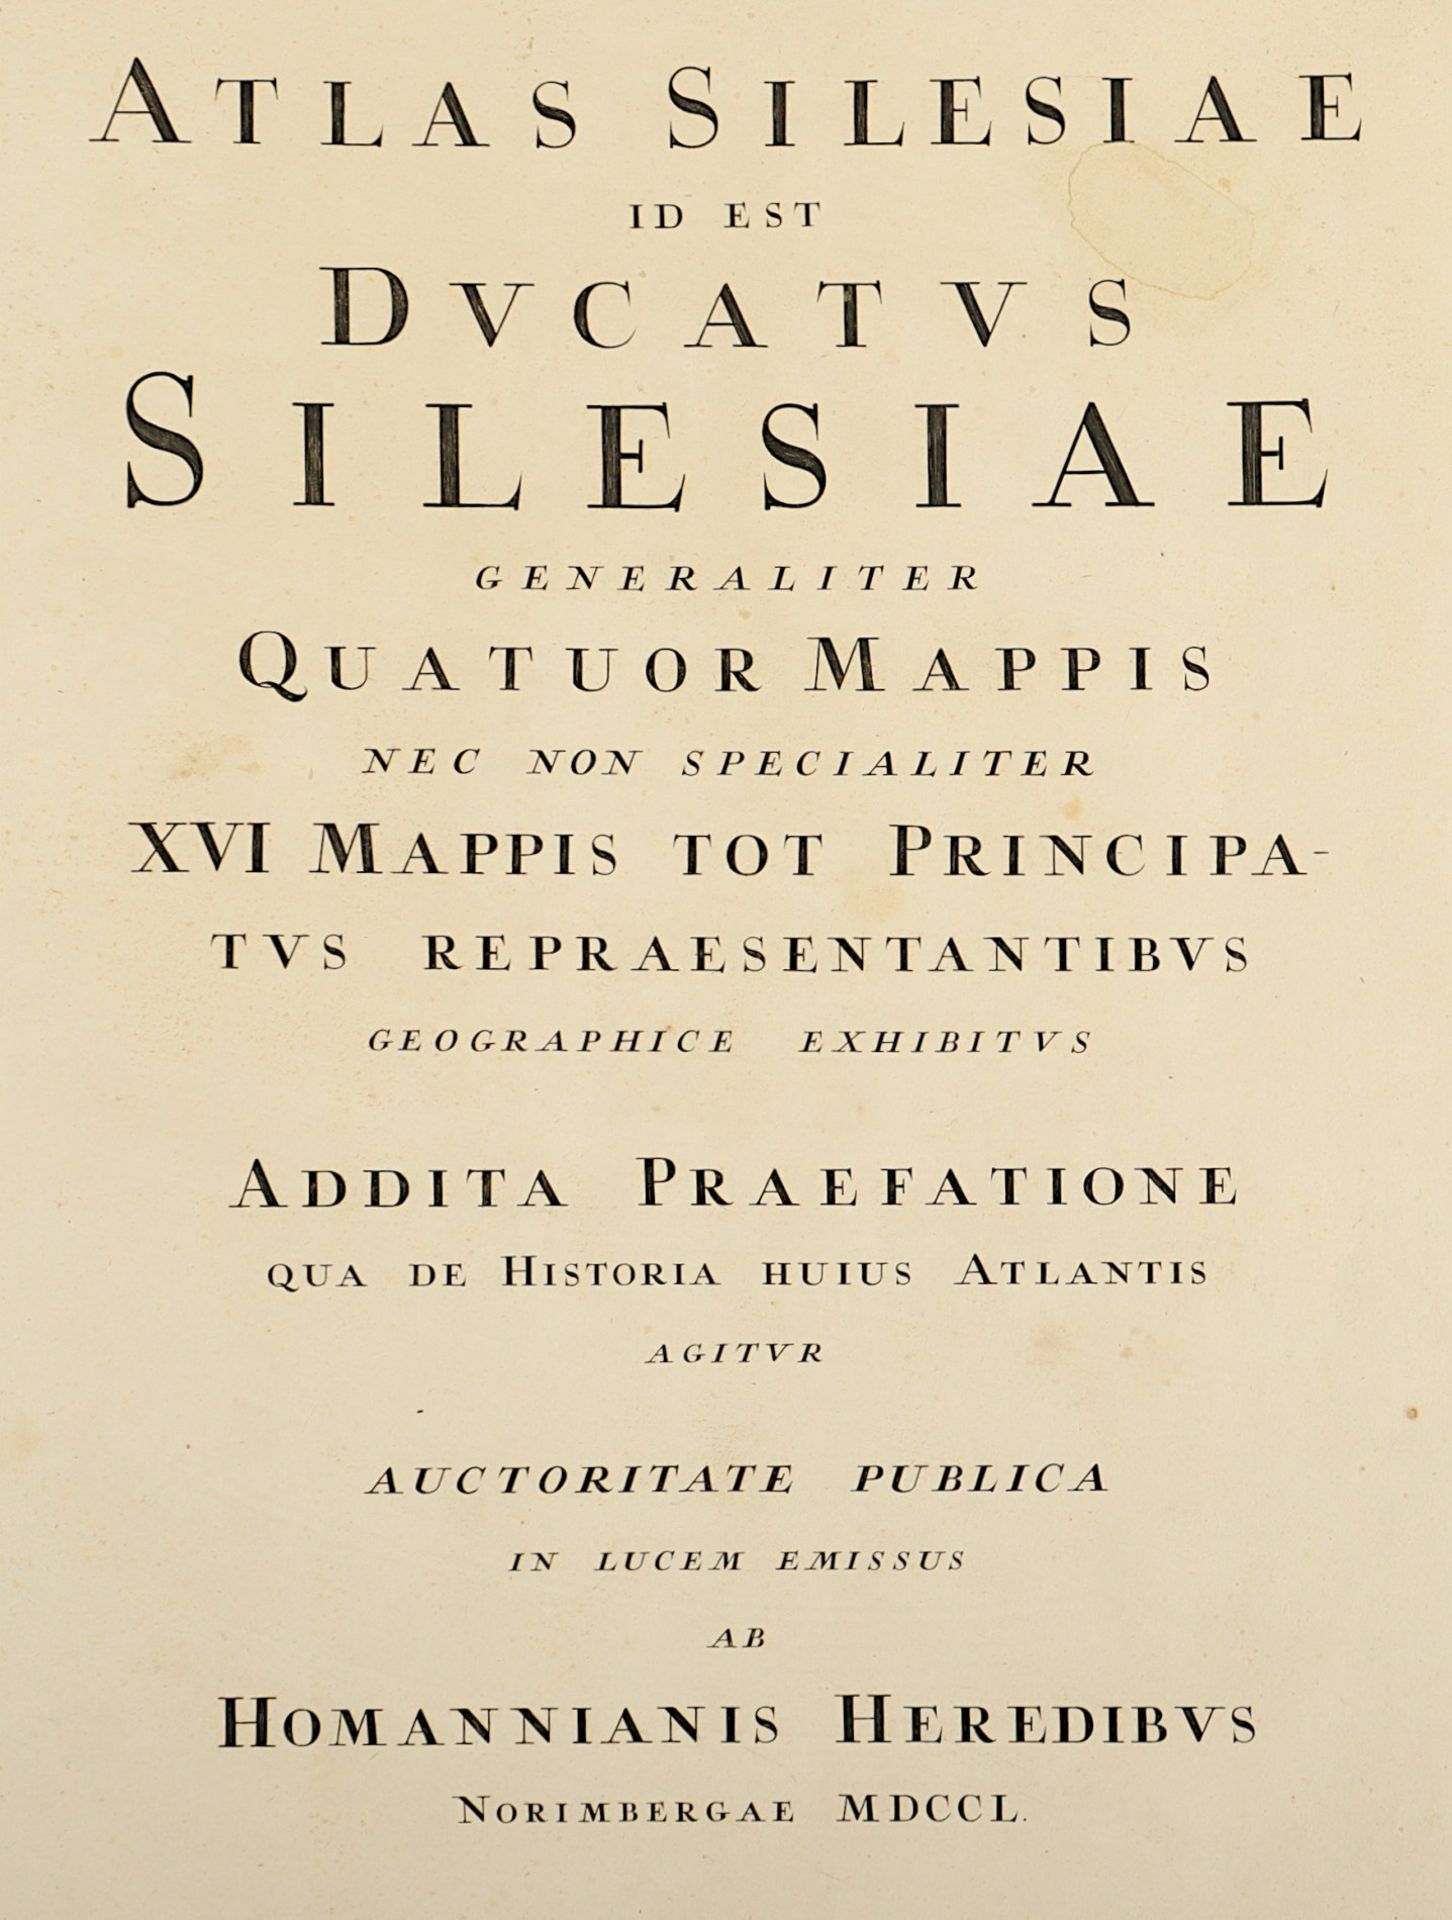 ATLAS HERZOGTUM SCHLESIEN, "Atlas silesiae id est Ducatus Silesiae generaliter quatuor mappis..", F - Image 6 of 9